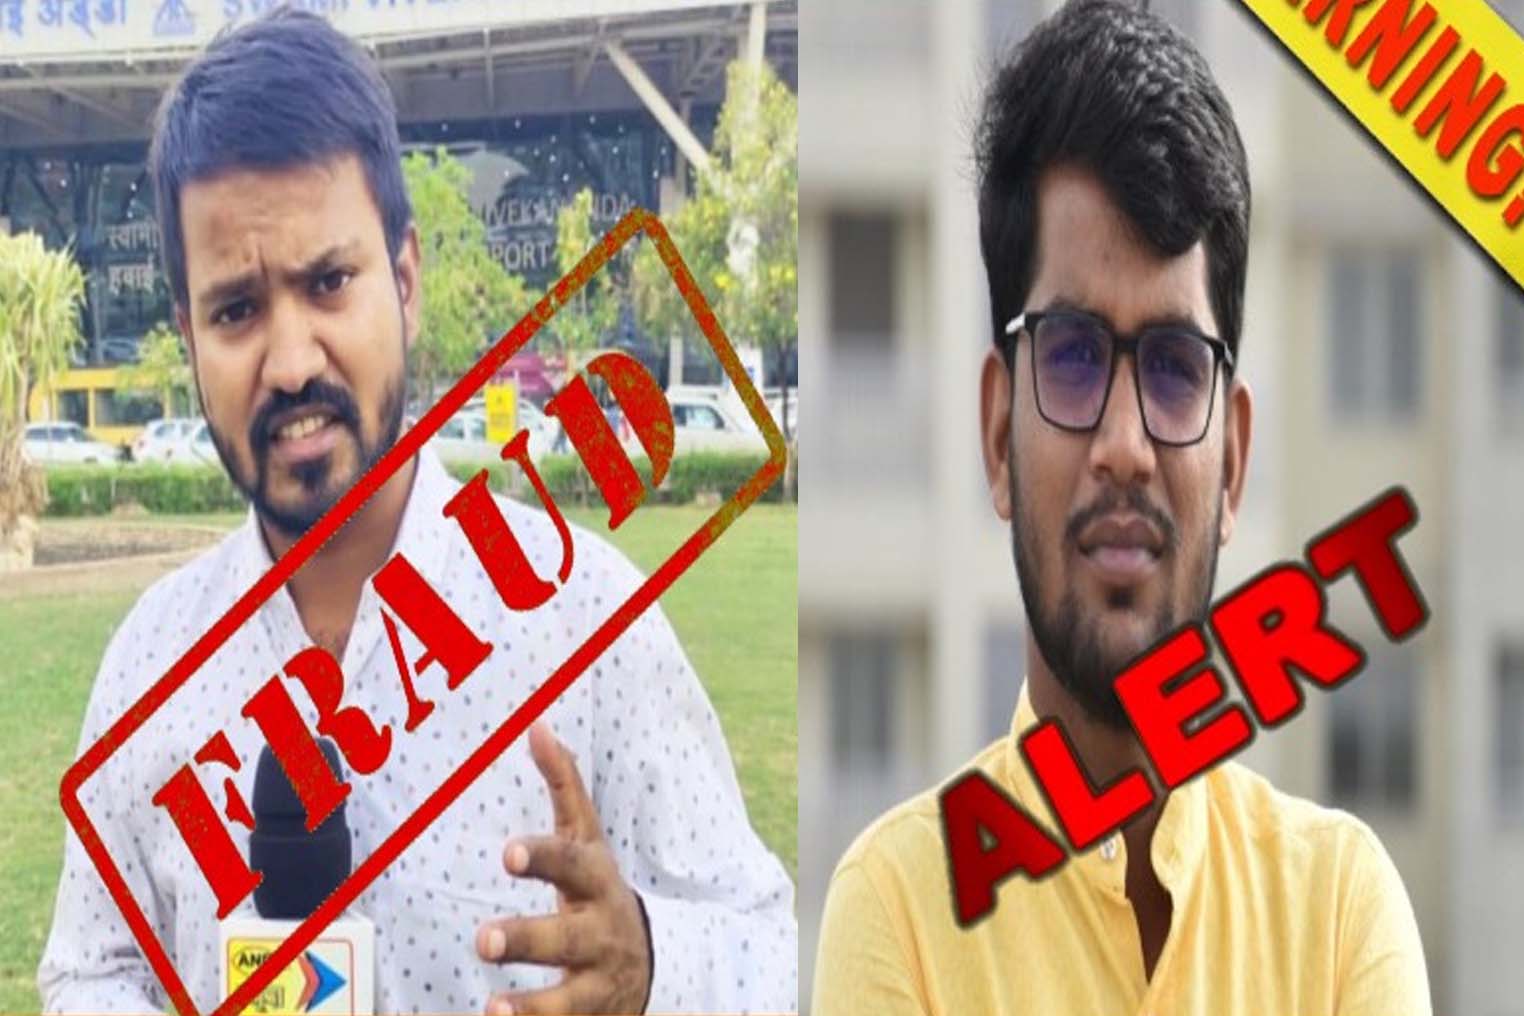 Raipur: चैनल का दुरुपयोग व अवैध वसूली करने के वाले दो रिपोर्टर को निष्कासित कर दिया गया...